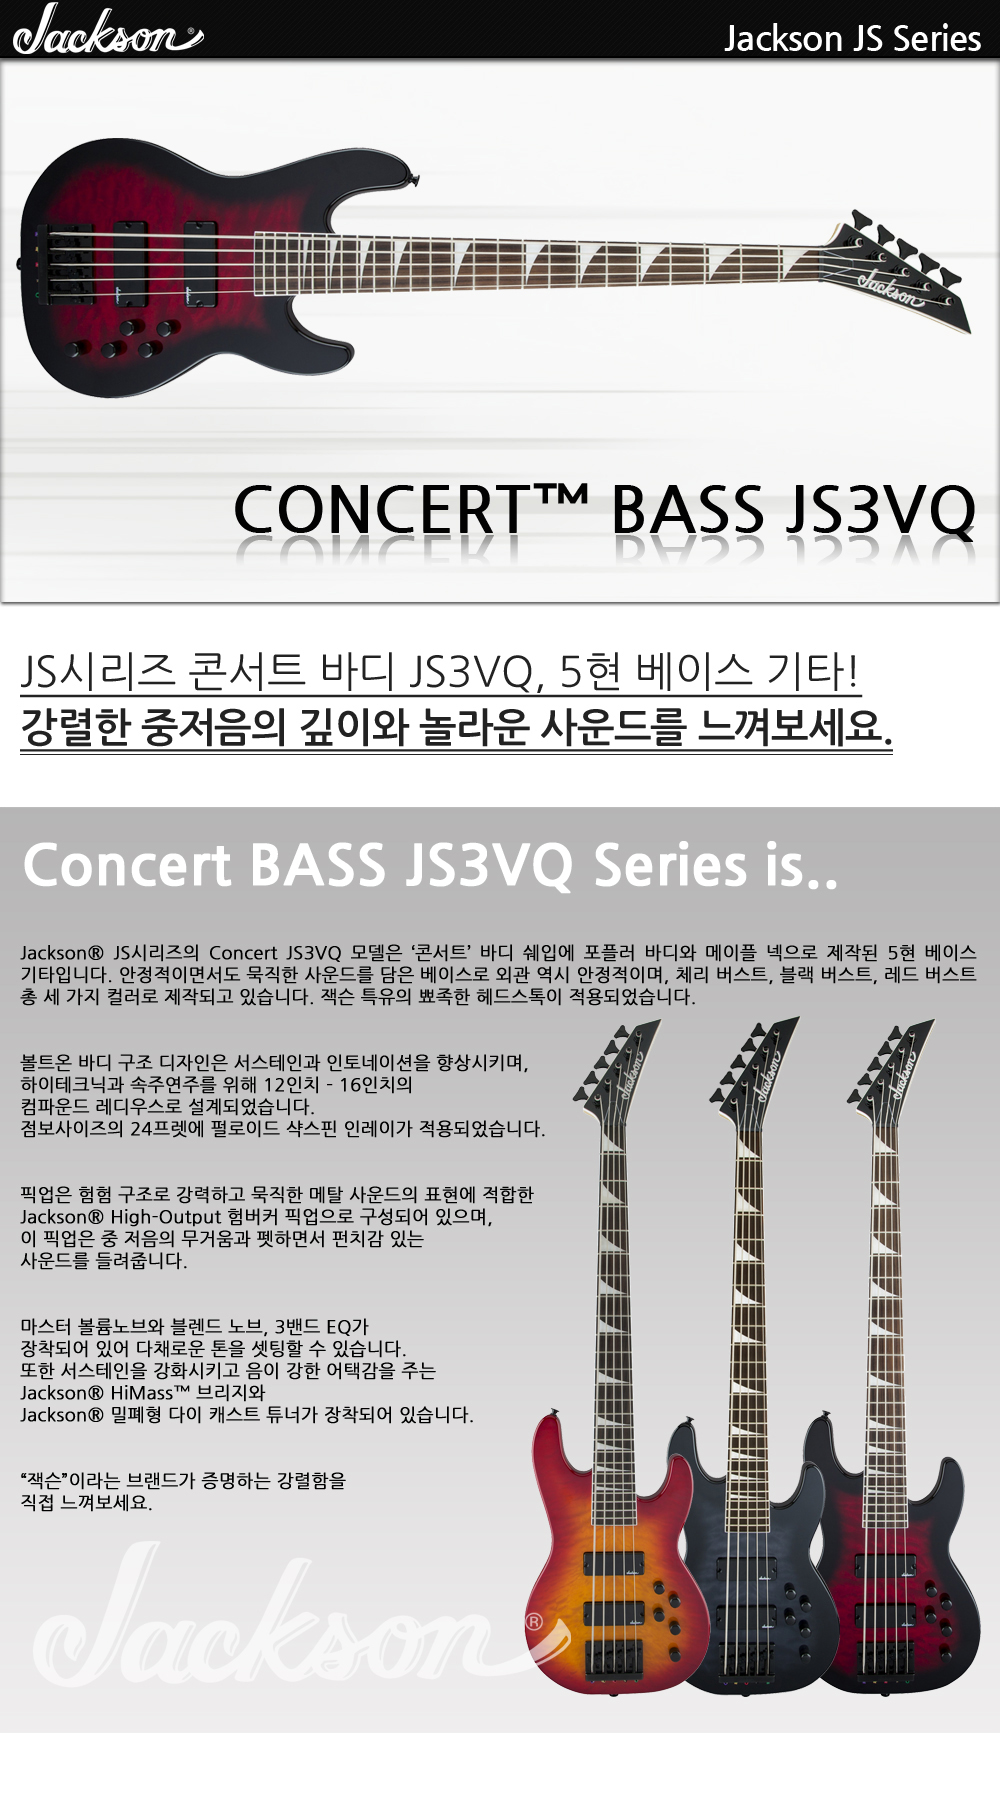 Jackson-JS-Bass-Concert-JS3VQ-TransRedBurst_1_172510.jpg